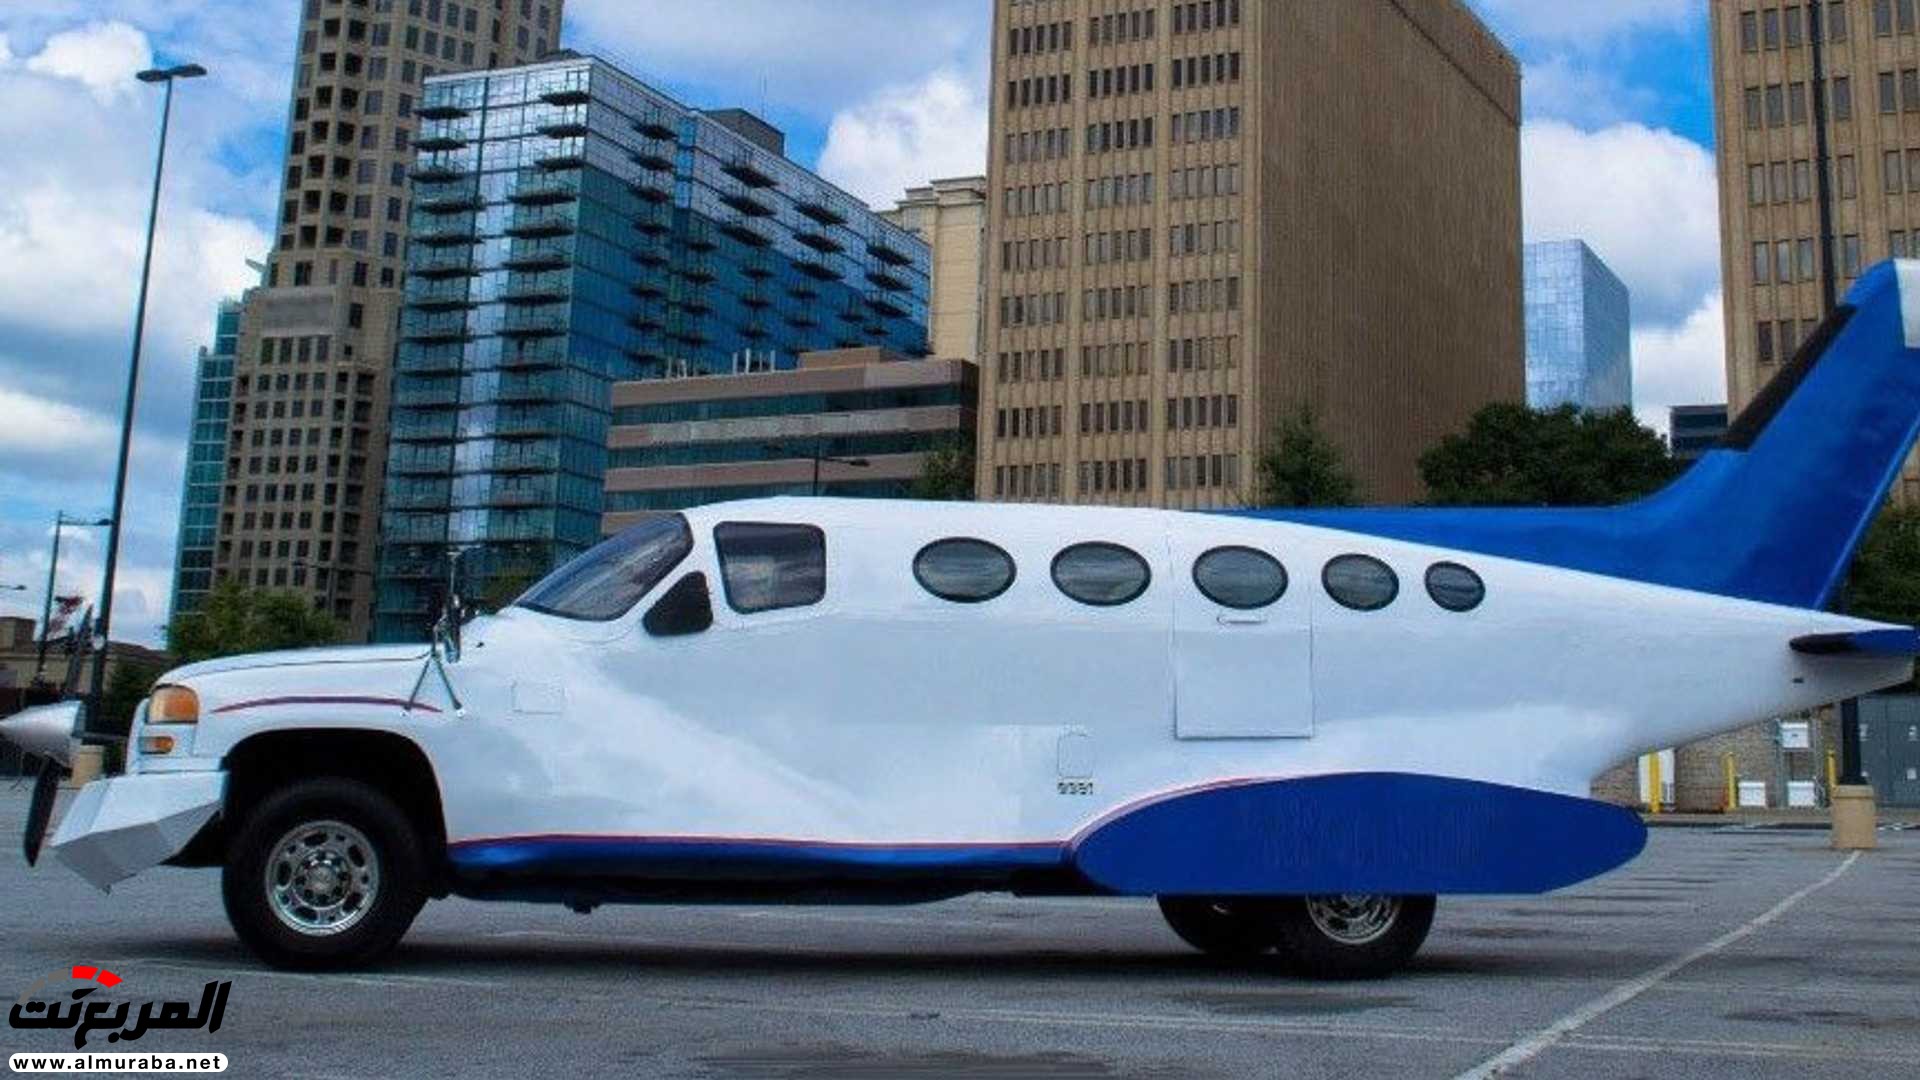 "بالفيديو والصور" جمس سييرا تتحول إلى طائرة ليموزين 18